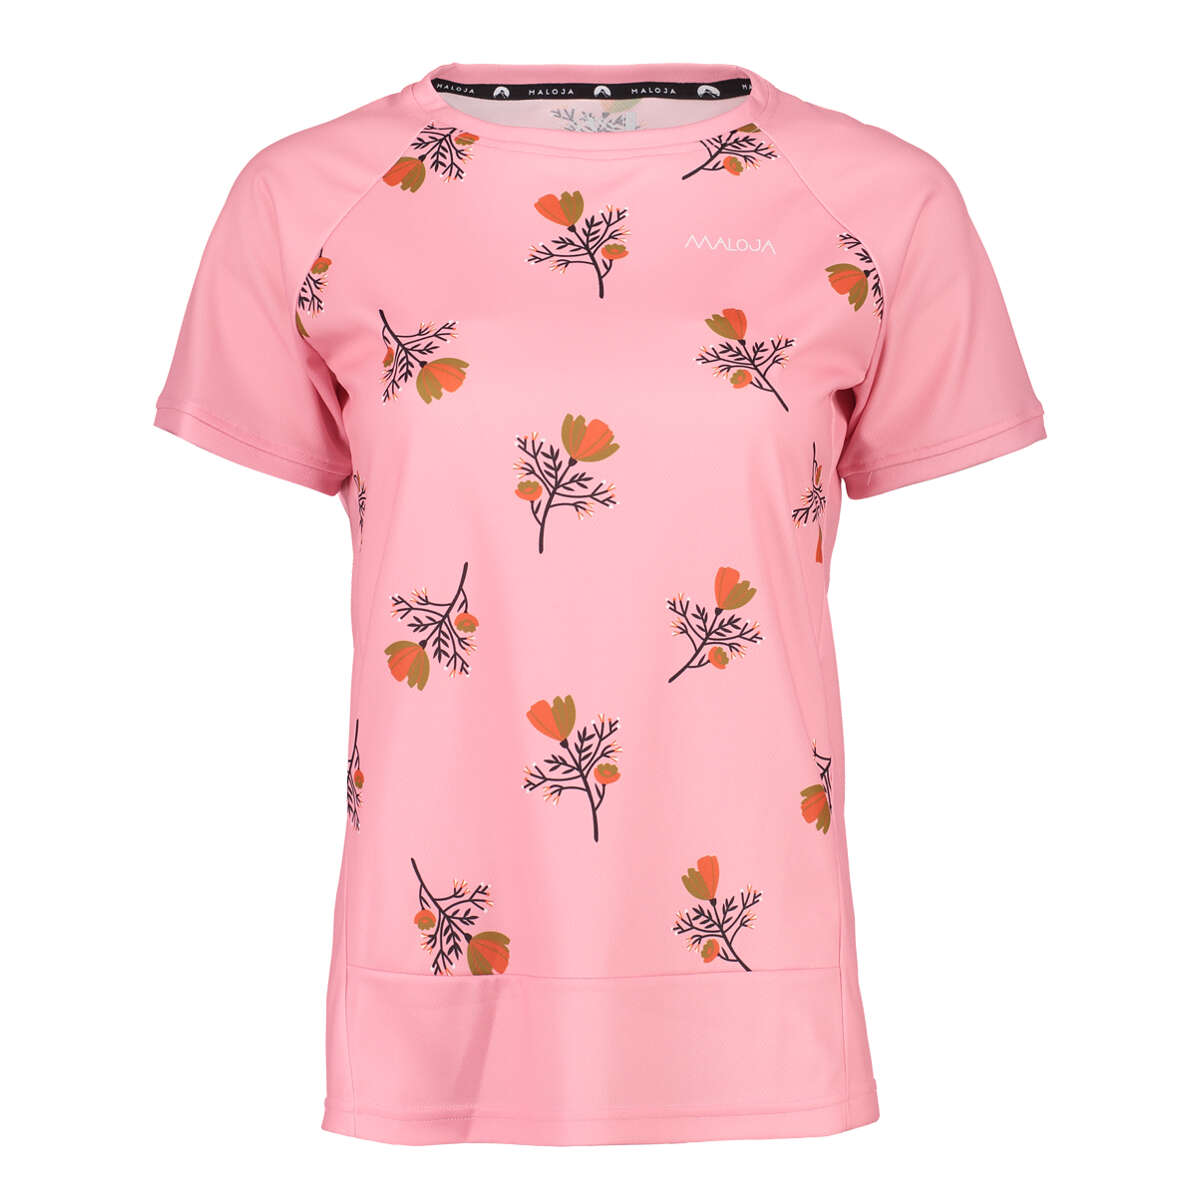 Maloja Girls Tech Shirt OrtensiaM. Cherry Blossom